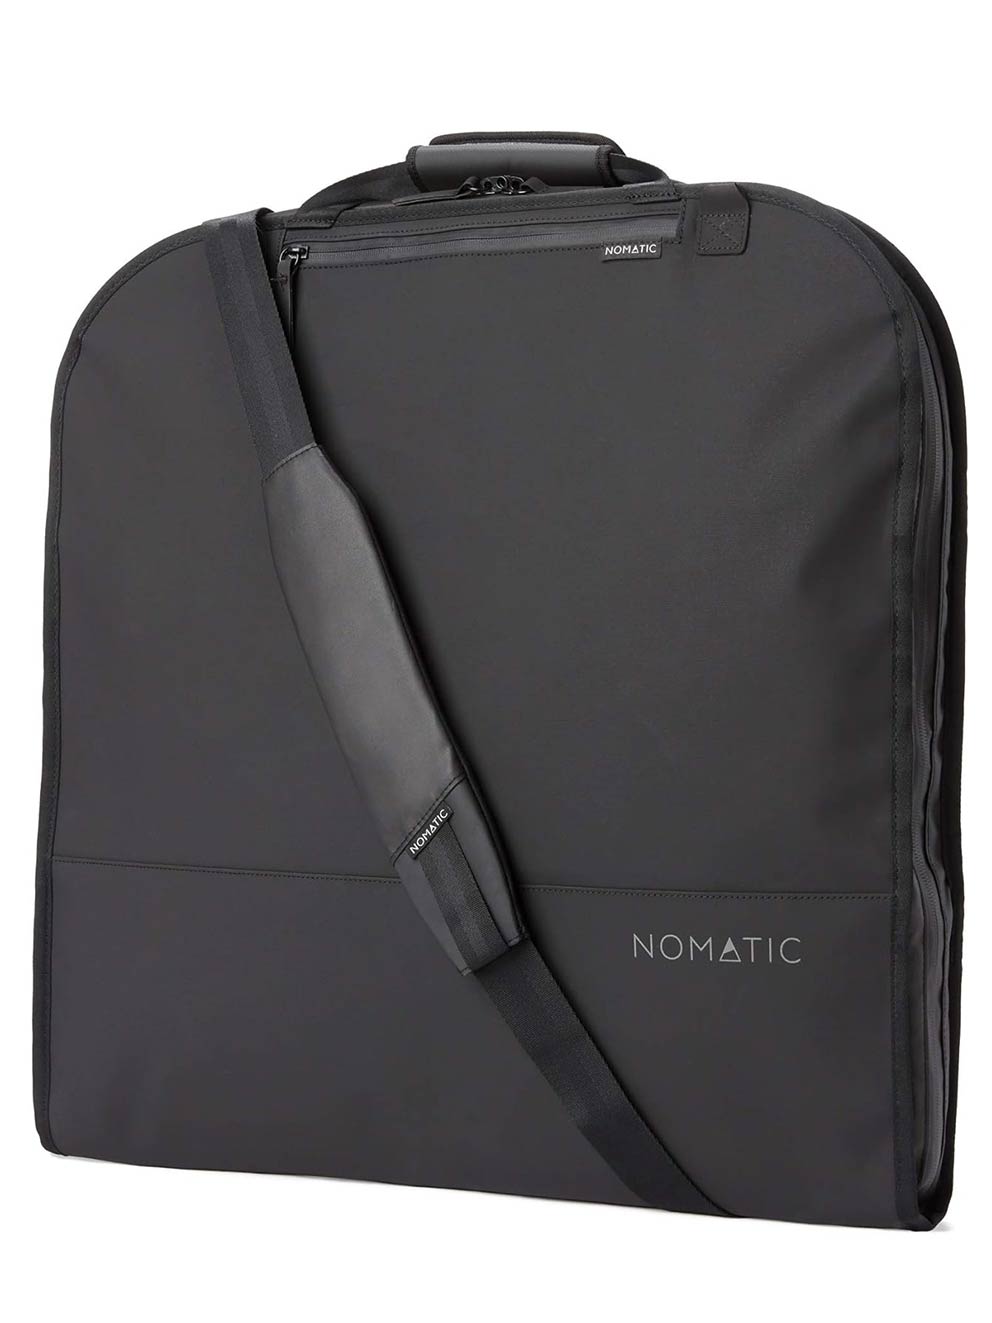 NOMATIC Premium Black Nylon Travel Luggage Bag - Holds up to 3 Suites plus Accessories